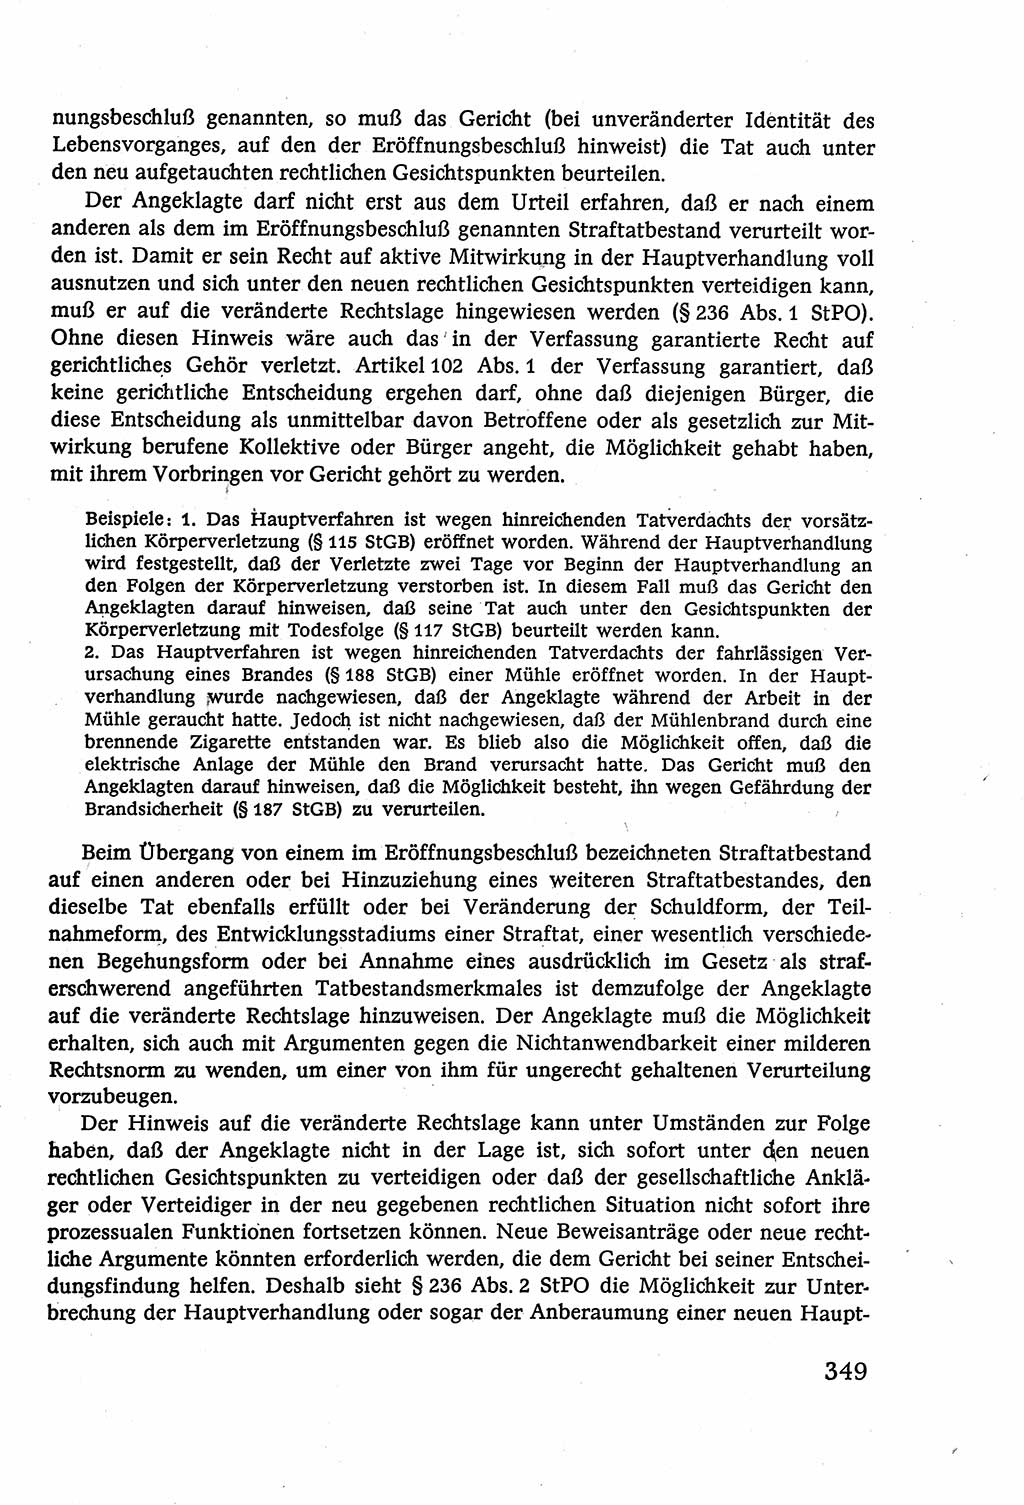 Strafverfahrensrecht [Deutsche Demokratische Republik (DDR)], Lehrbuch 1977, Seite 349 (Strafverf.-R. DDR Lb. 1977, S. 349)